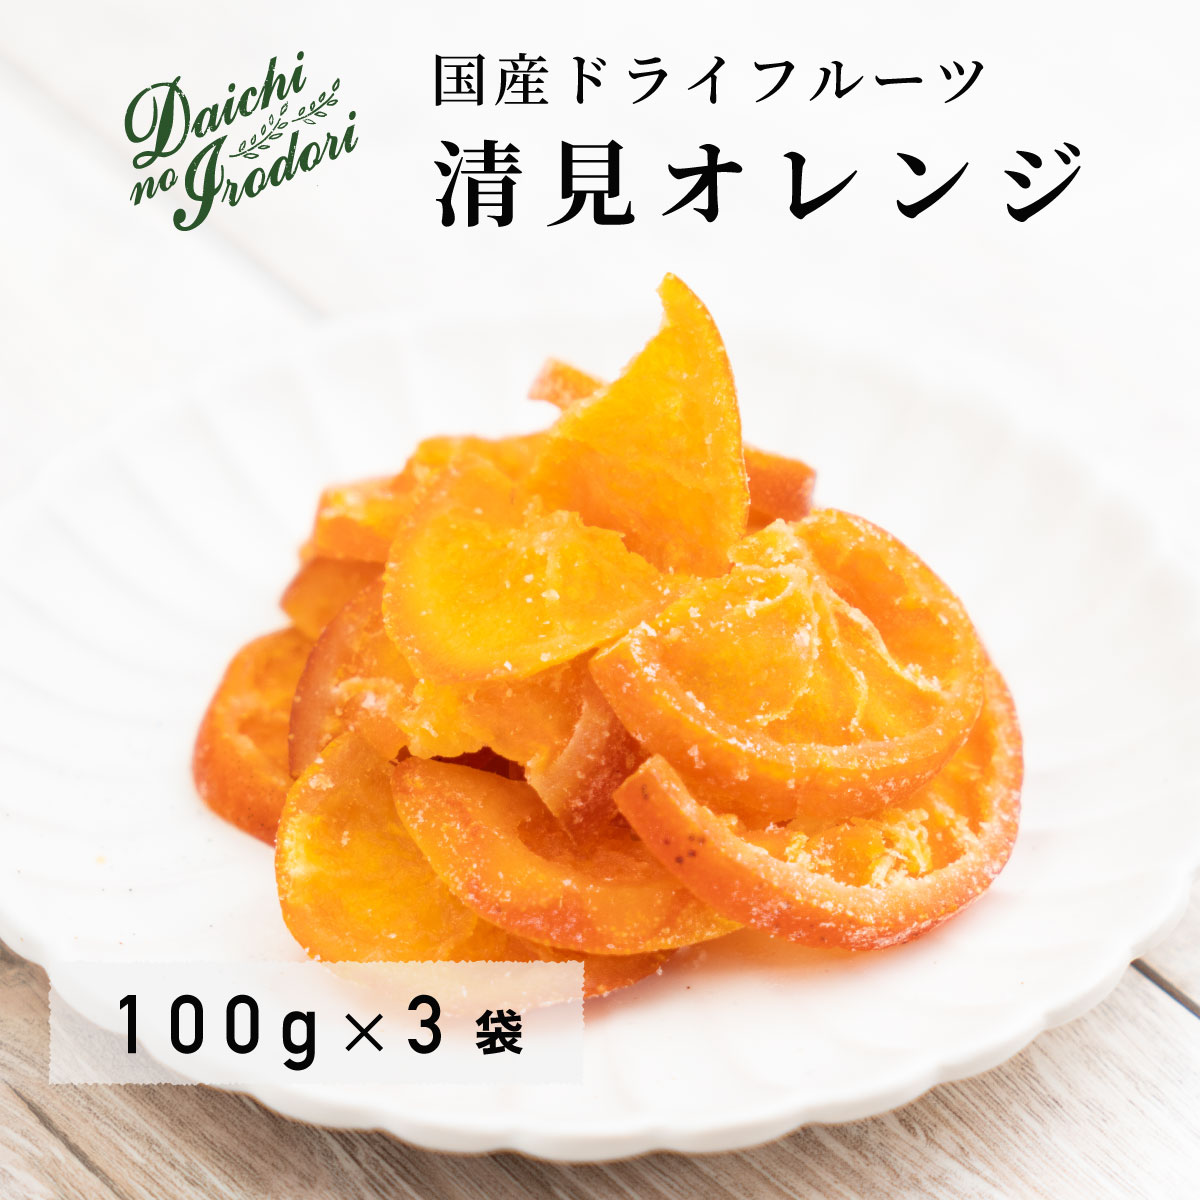 乾燥橘子果實 水果乾 日本產 清見橘子 100g x 3包 夾鏈袋裝日本必買 | 日本樂天熱銷